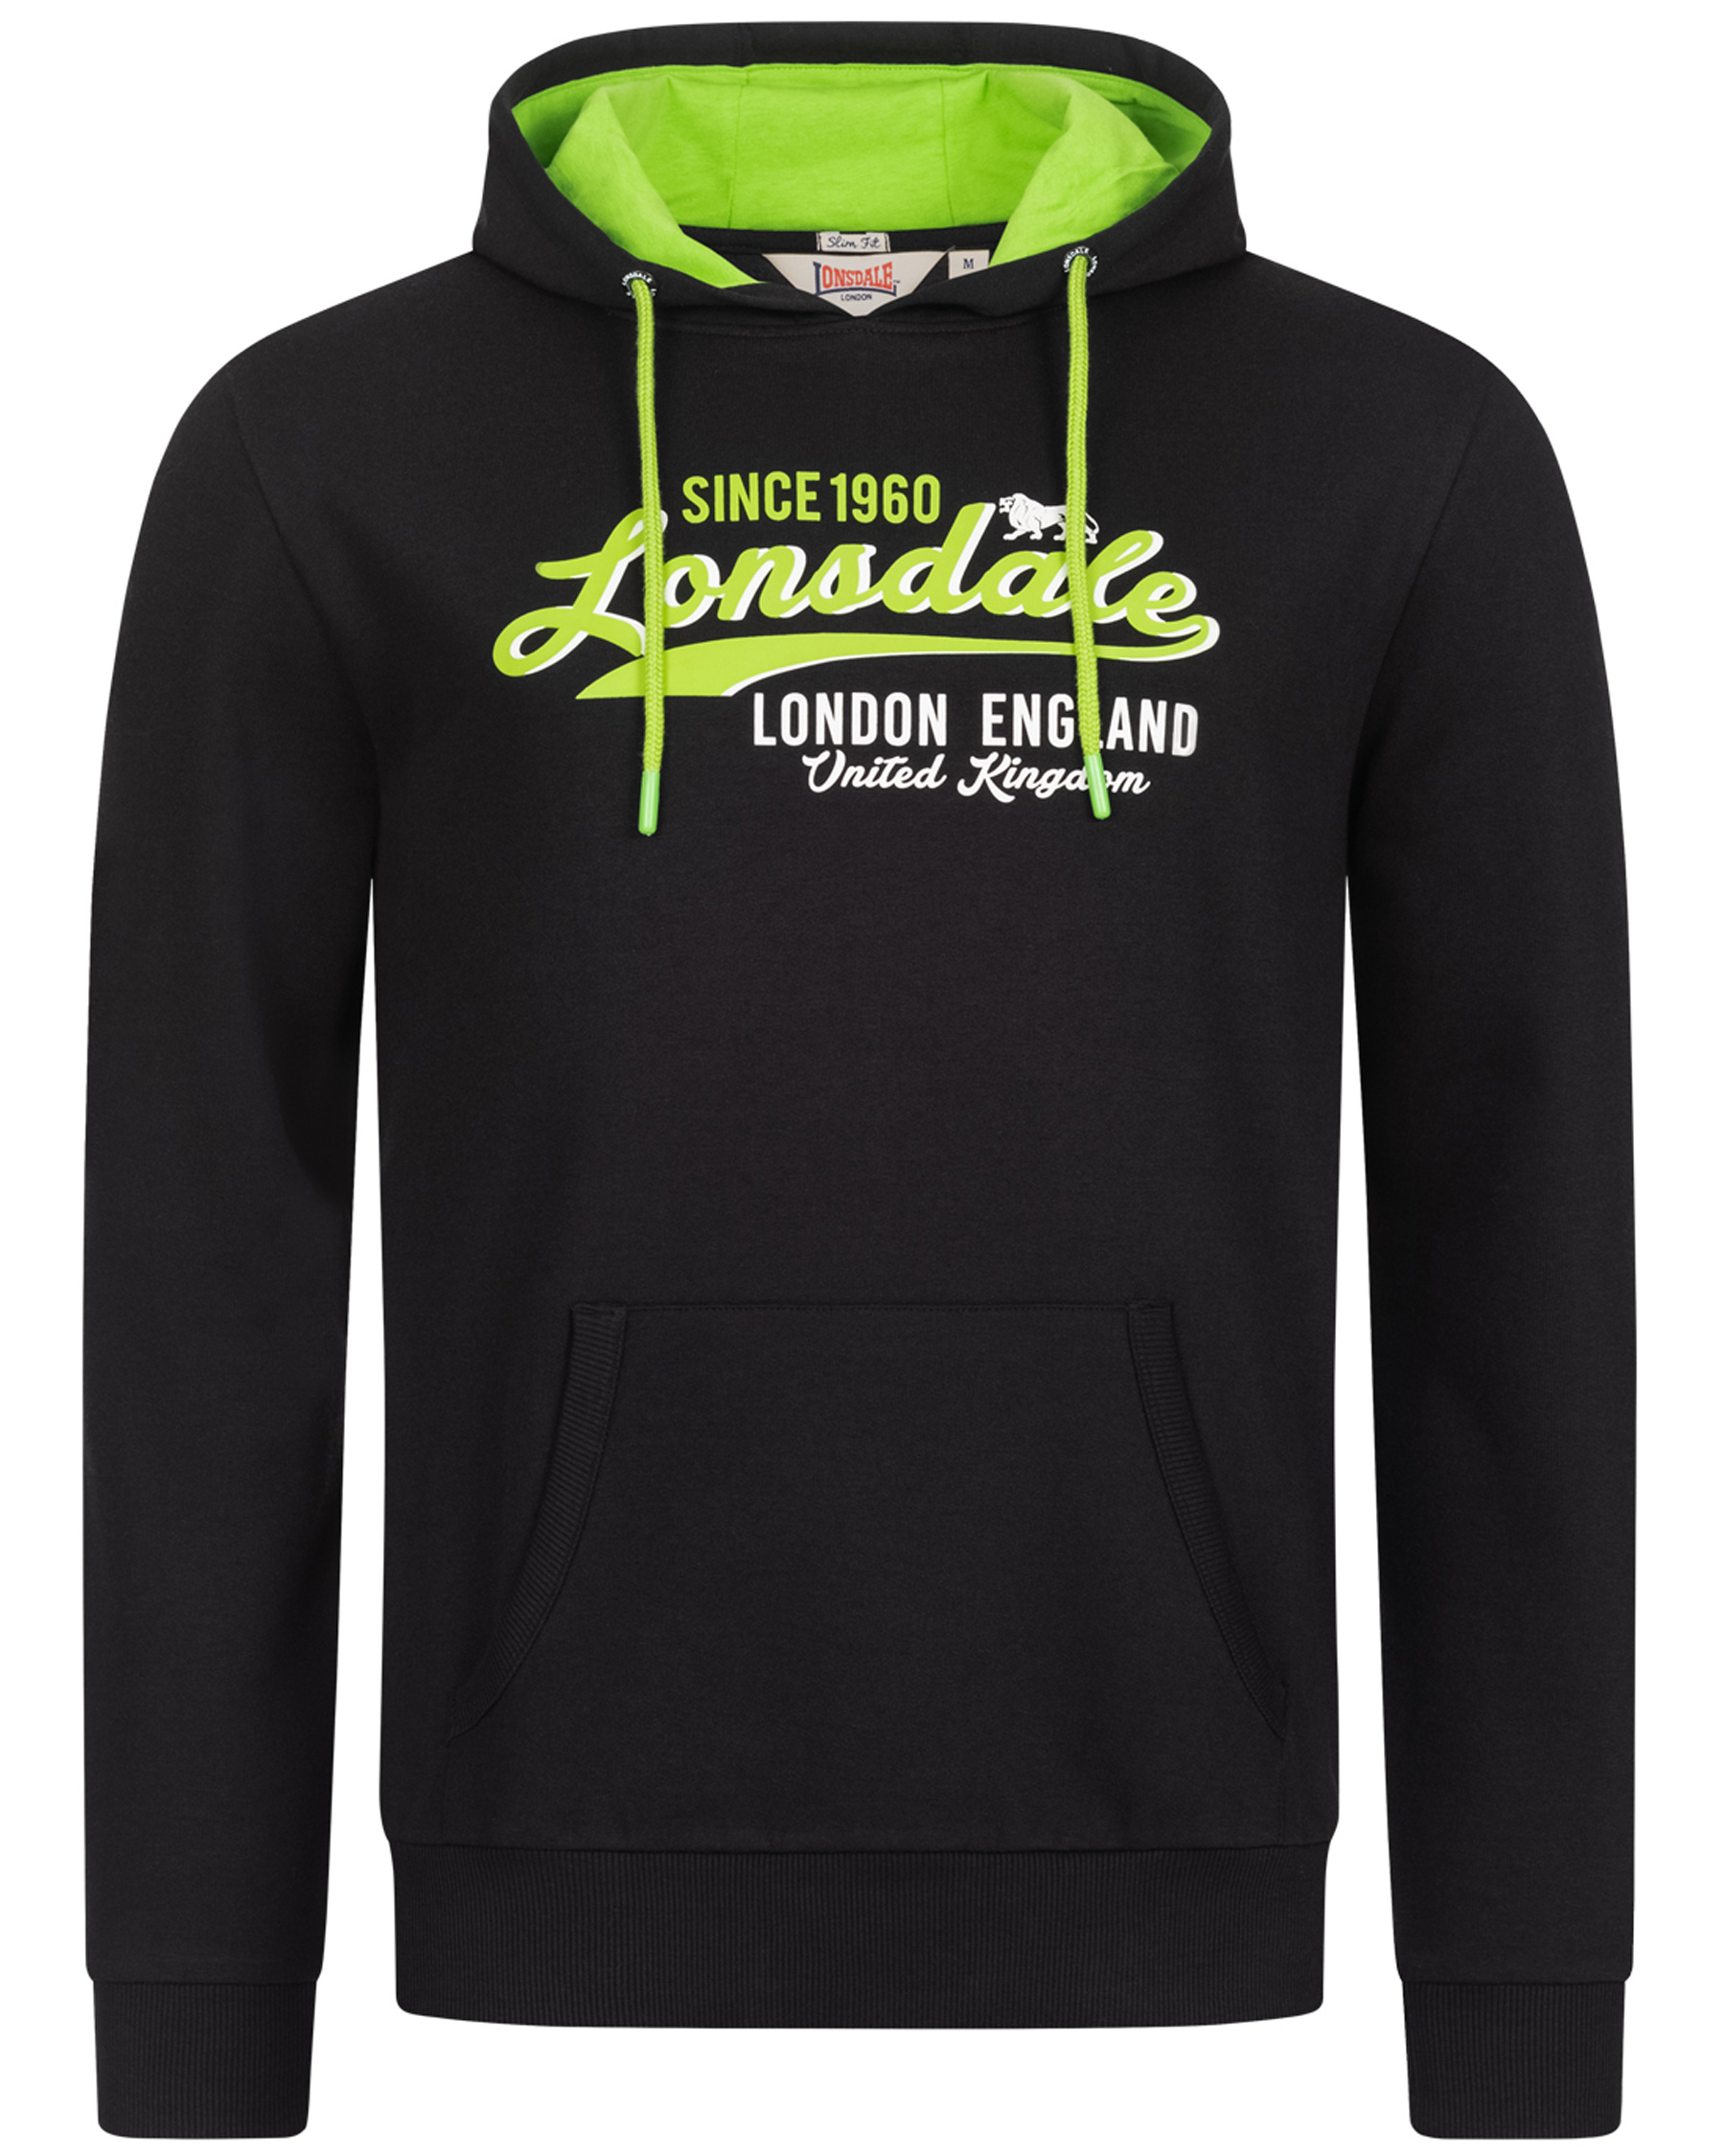 Lonsdale hooded sweatshirt Gratwich